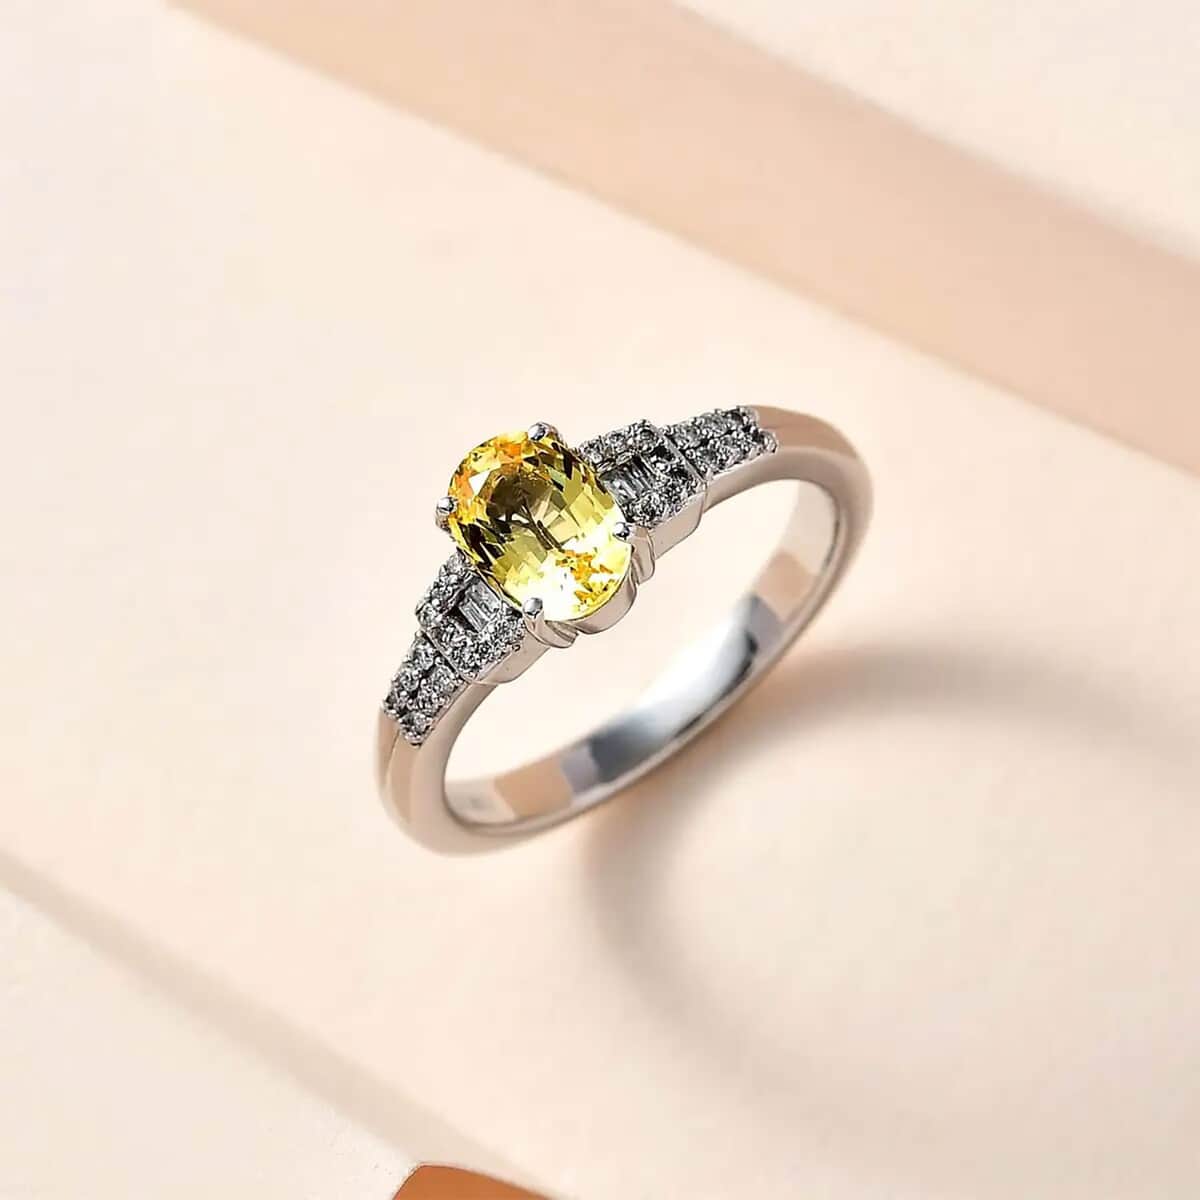 Doorbuster Luxoro 10K White Gold Premium Natural Ceylon Yellow Sapphire and G-H I2 Diamond Ring 1.35 ctw image number 1